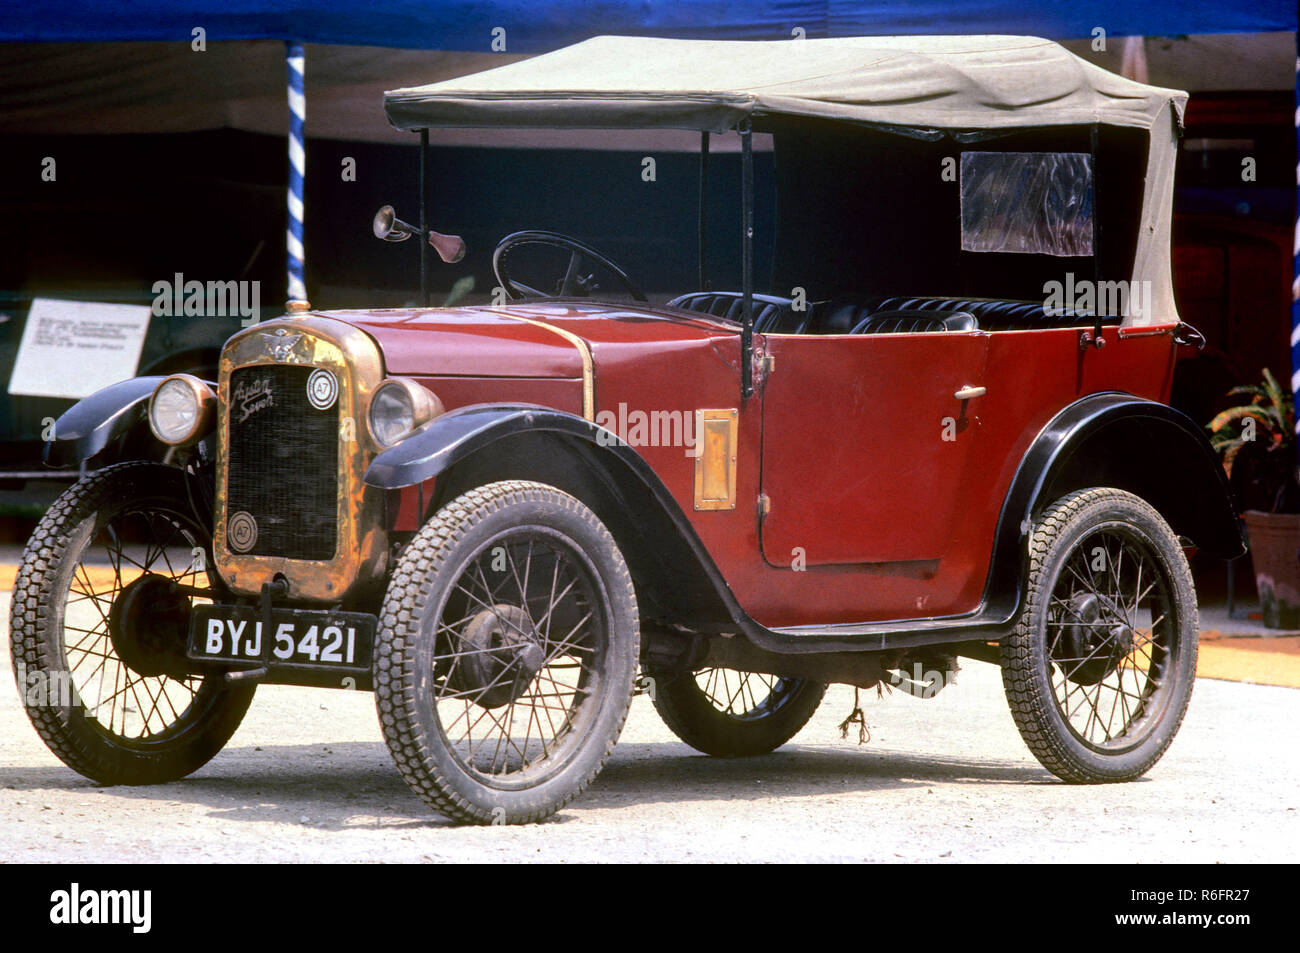 Véhicules automobiles Automobiles, austin de 1928 Banque D'Images